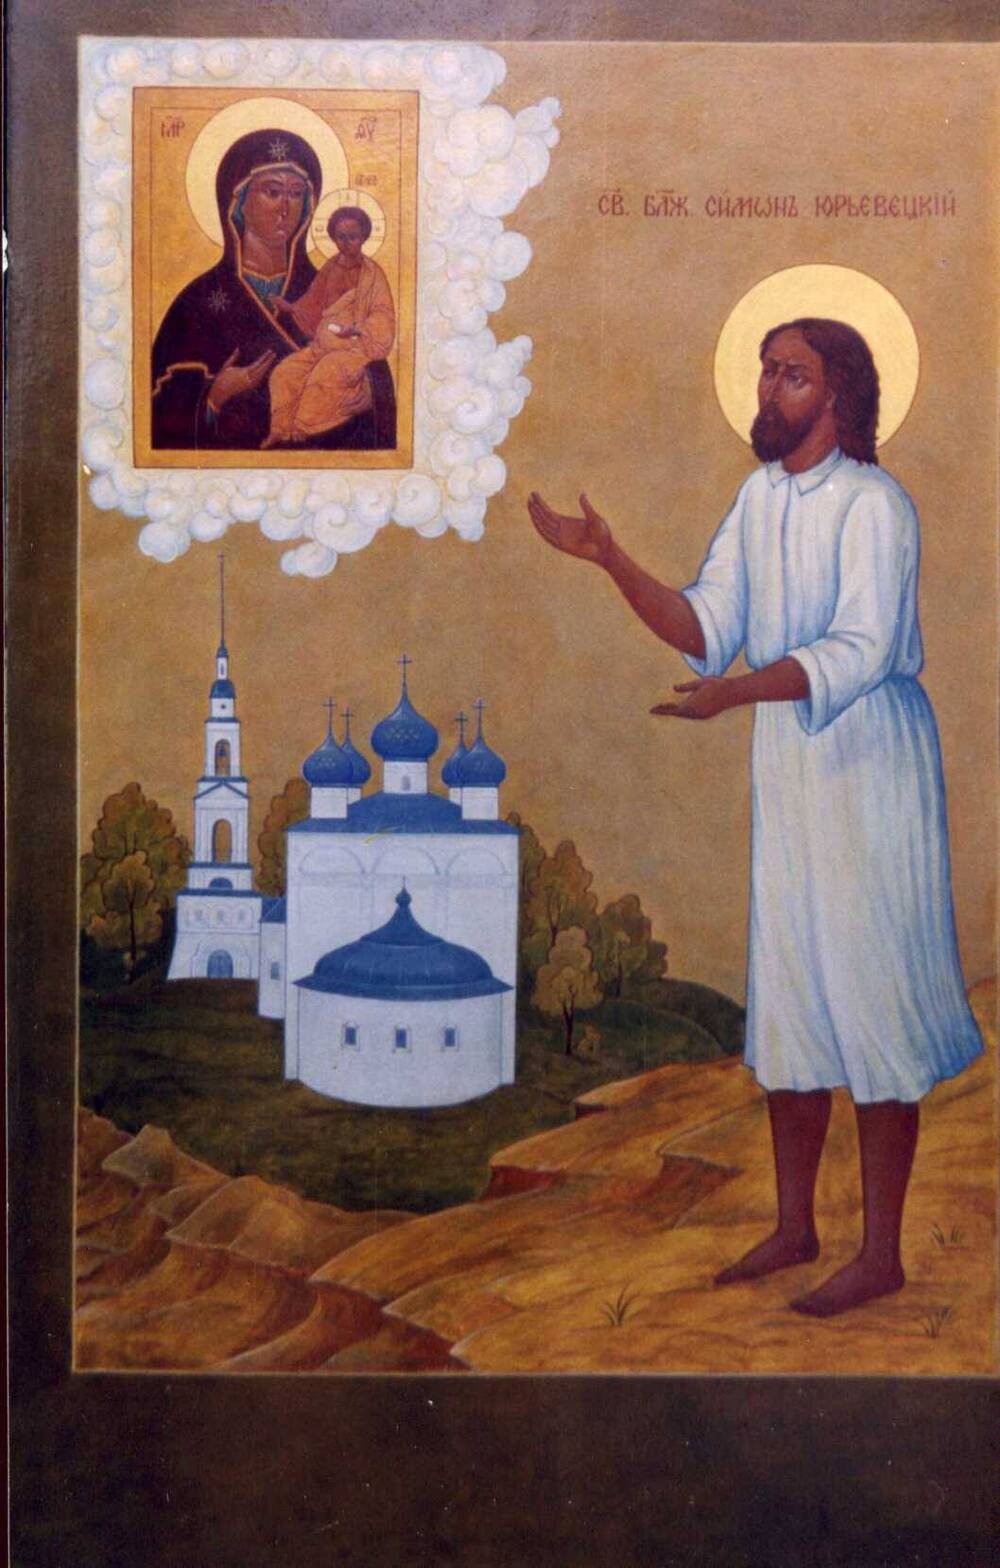 Фото.Икона Святой Блаженный Симон Юрьевецкий.